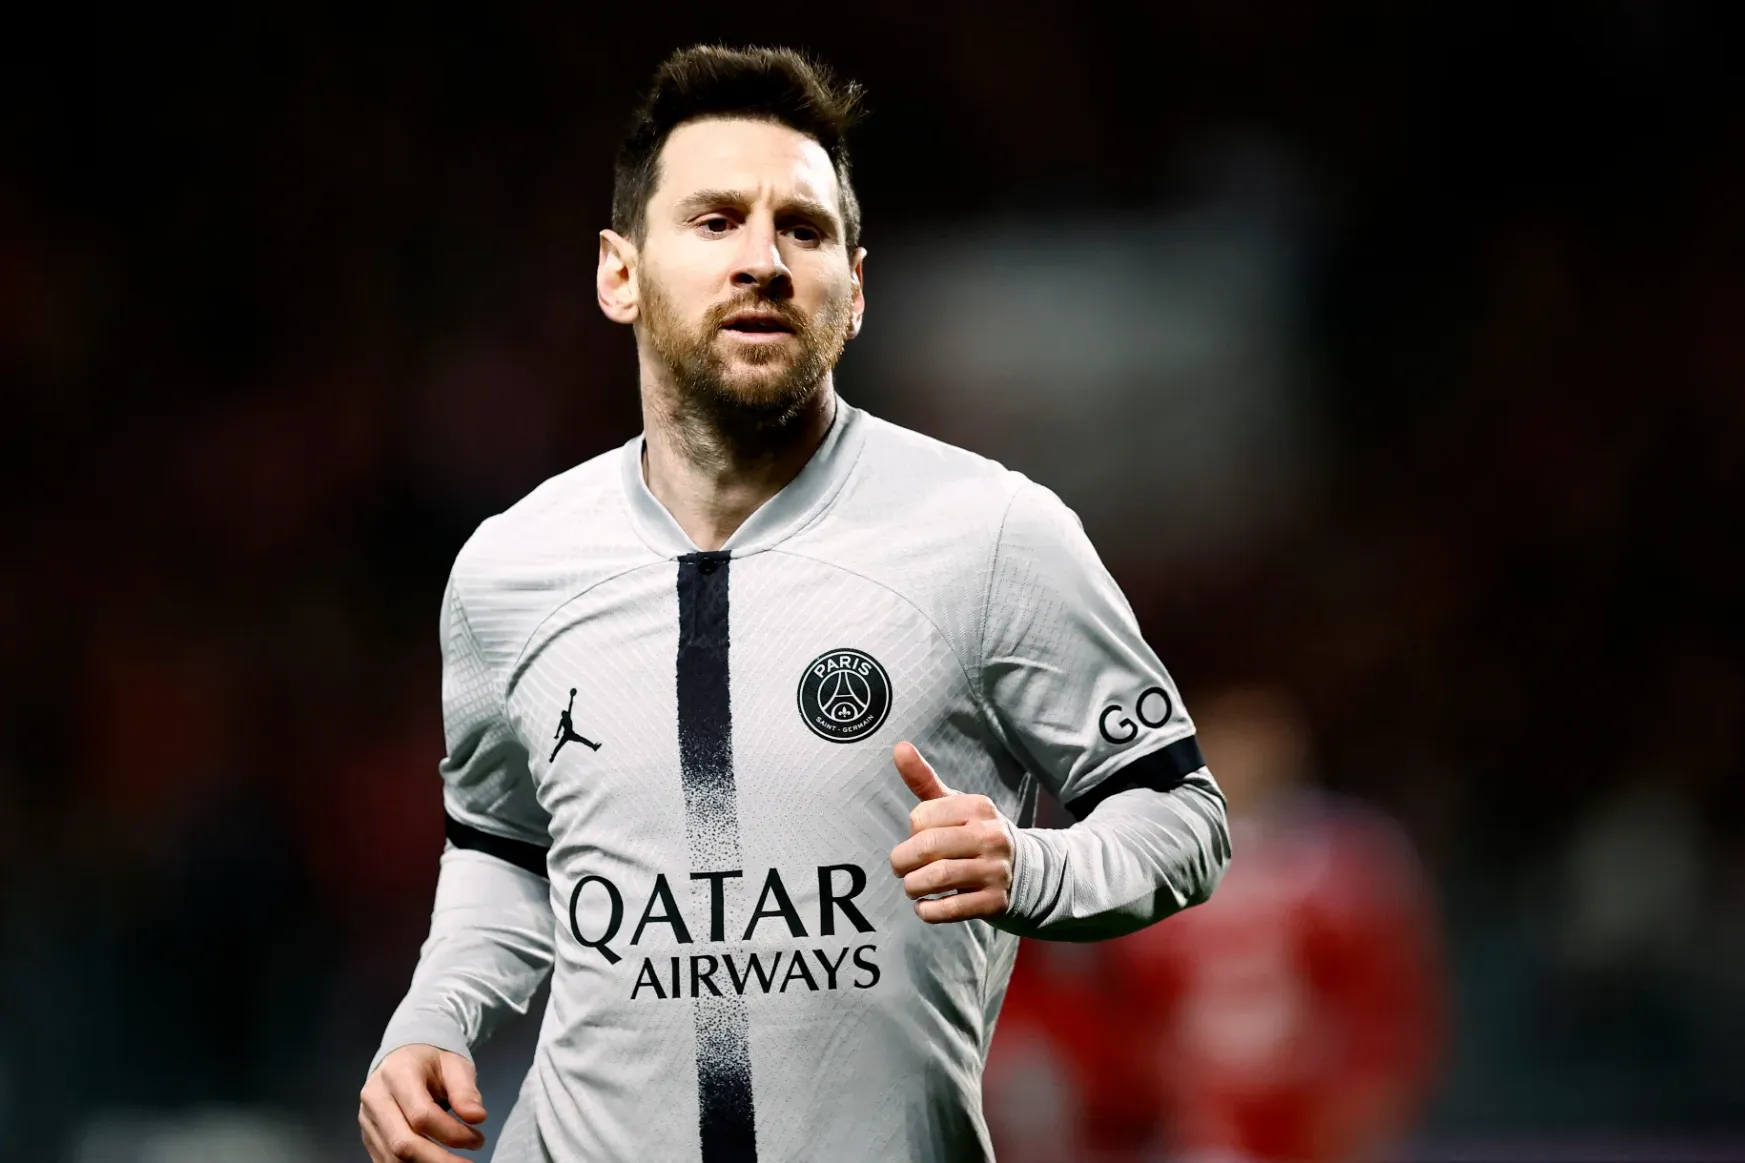 Messi apja a fia körüli pletykákról: „Mikor hagyjátok abba a hazudozást?”